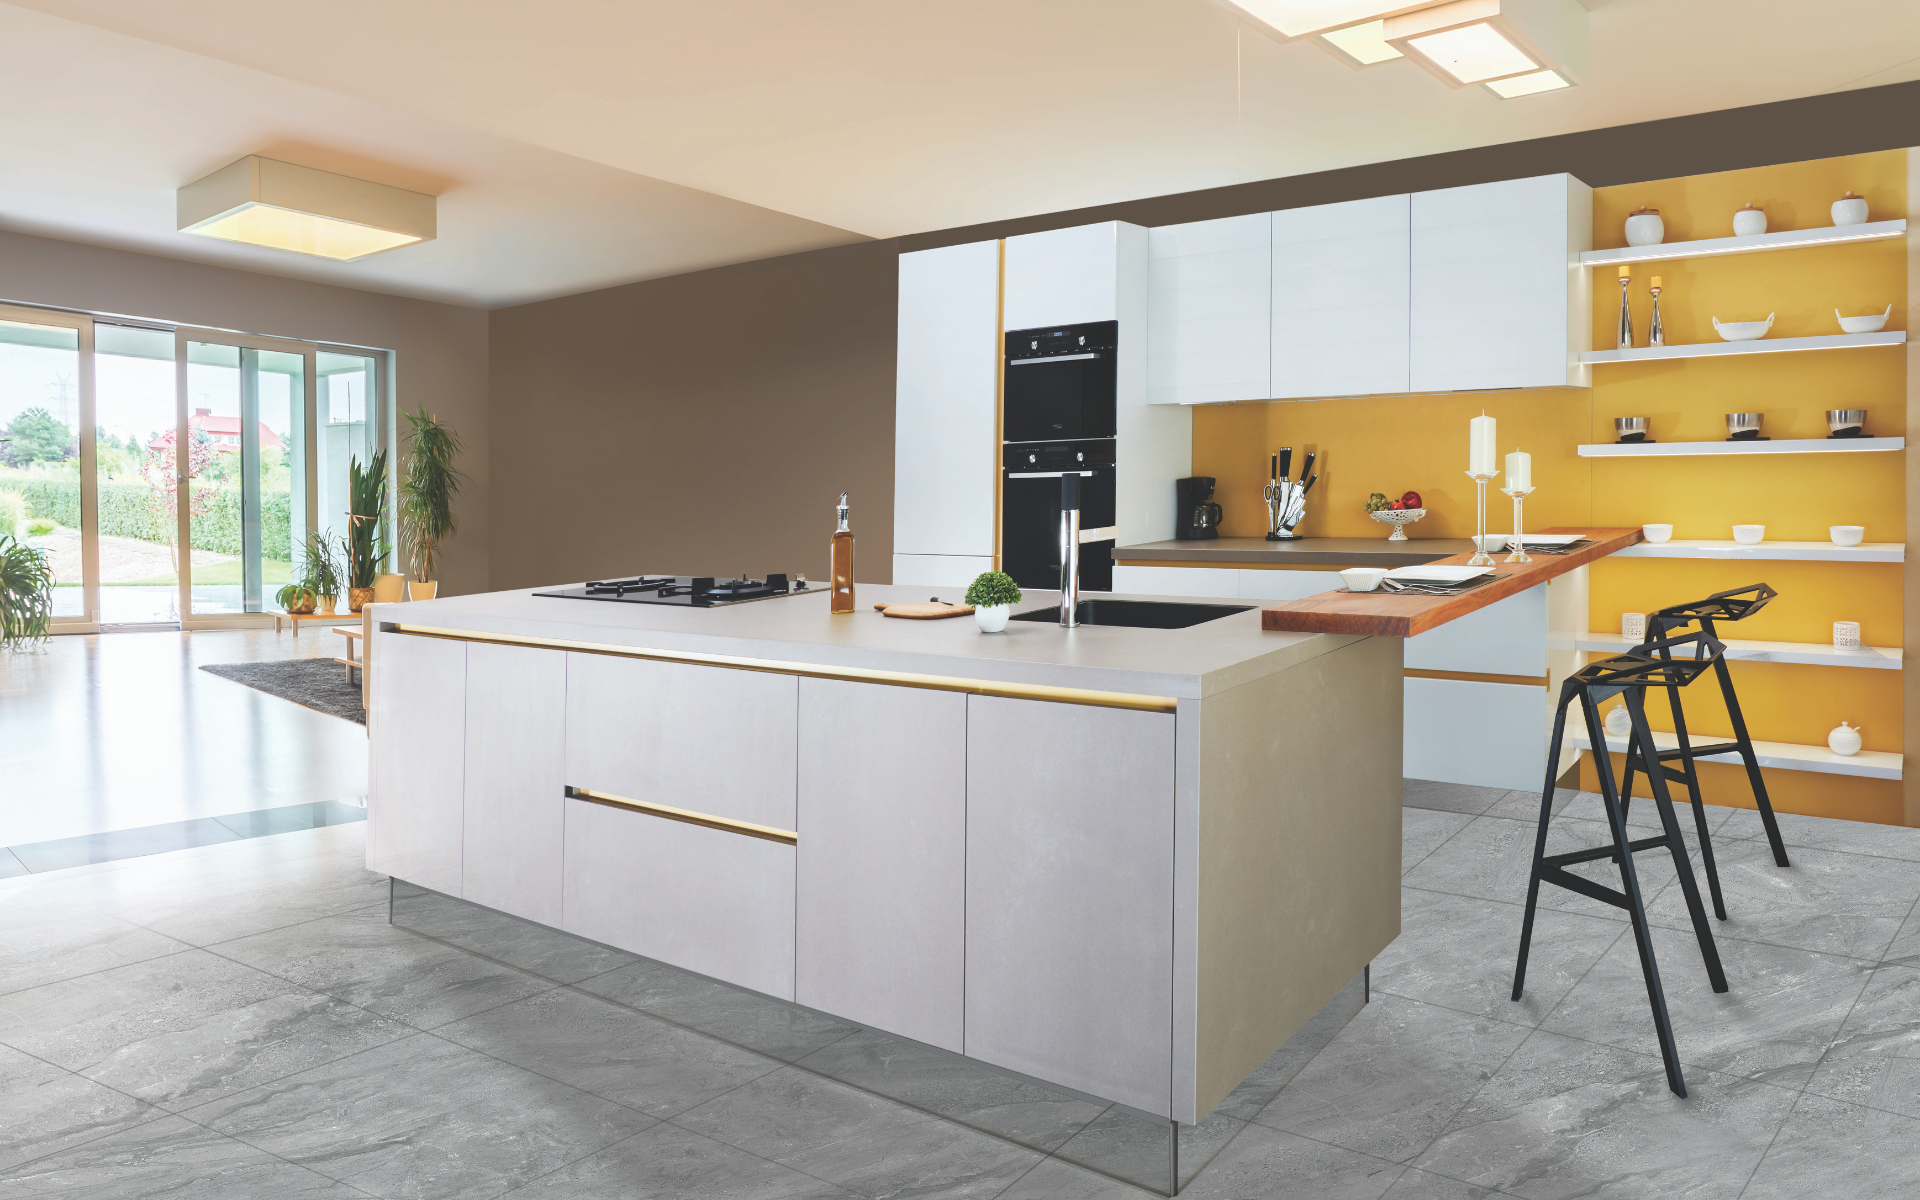 Elegant kitchen design with long kitchen island